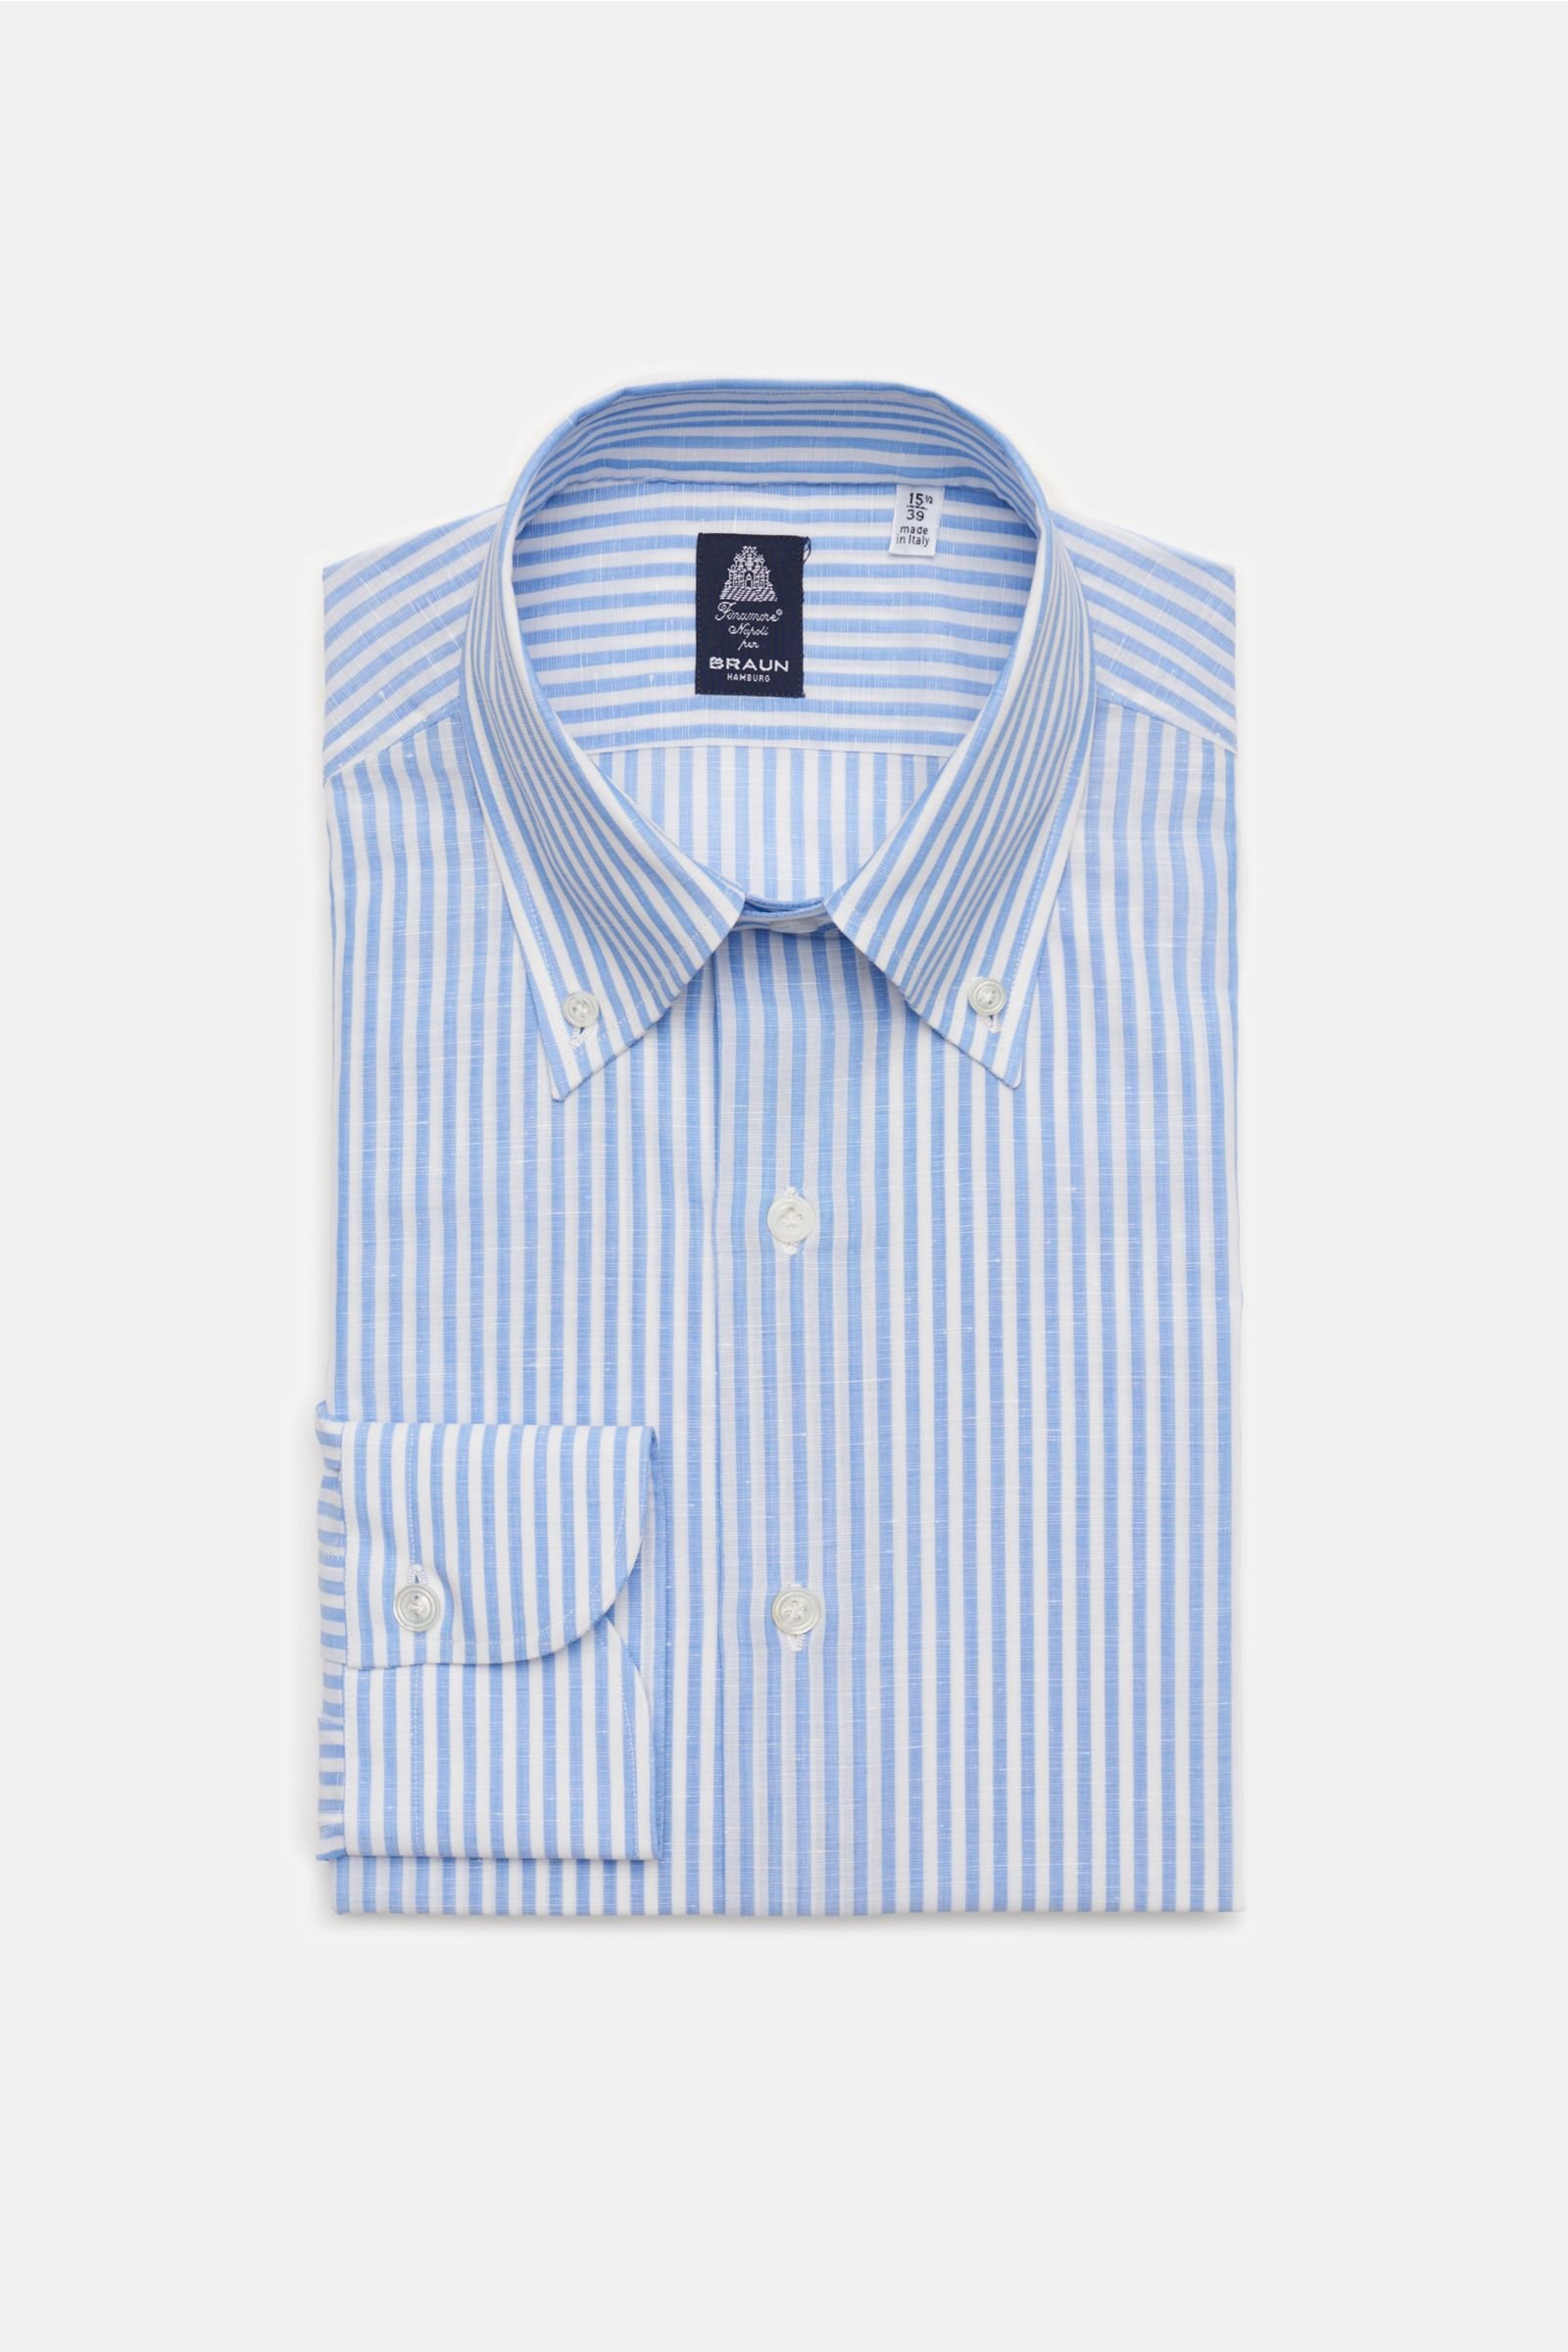 Business Hemd 'Leonardo Napoli' Button-Down-Kragen hellblau/weiß gestreift